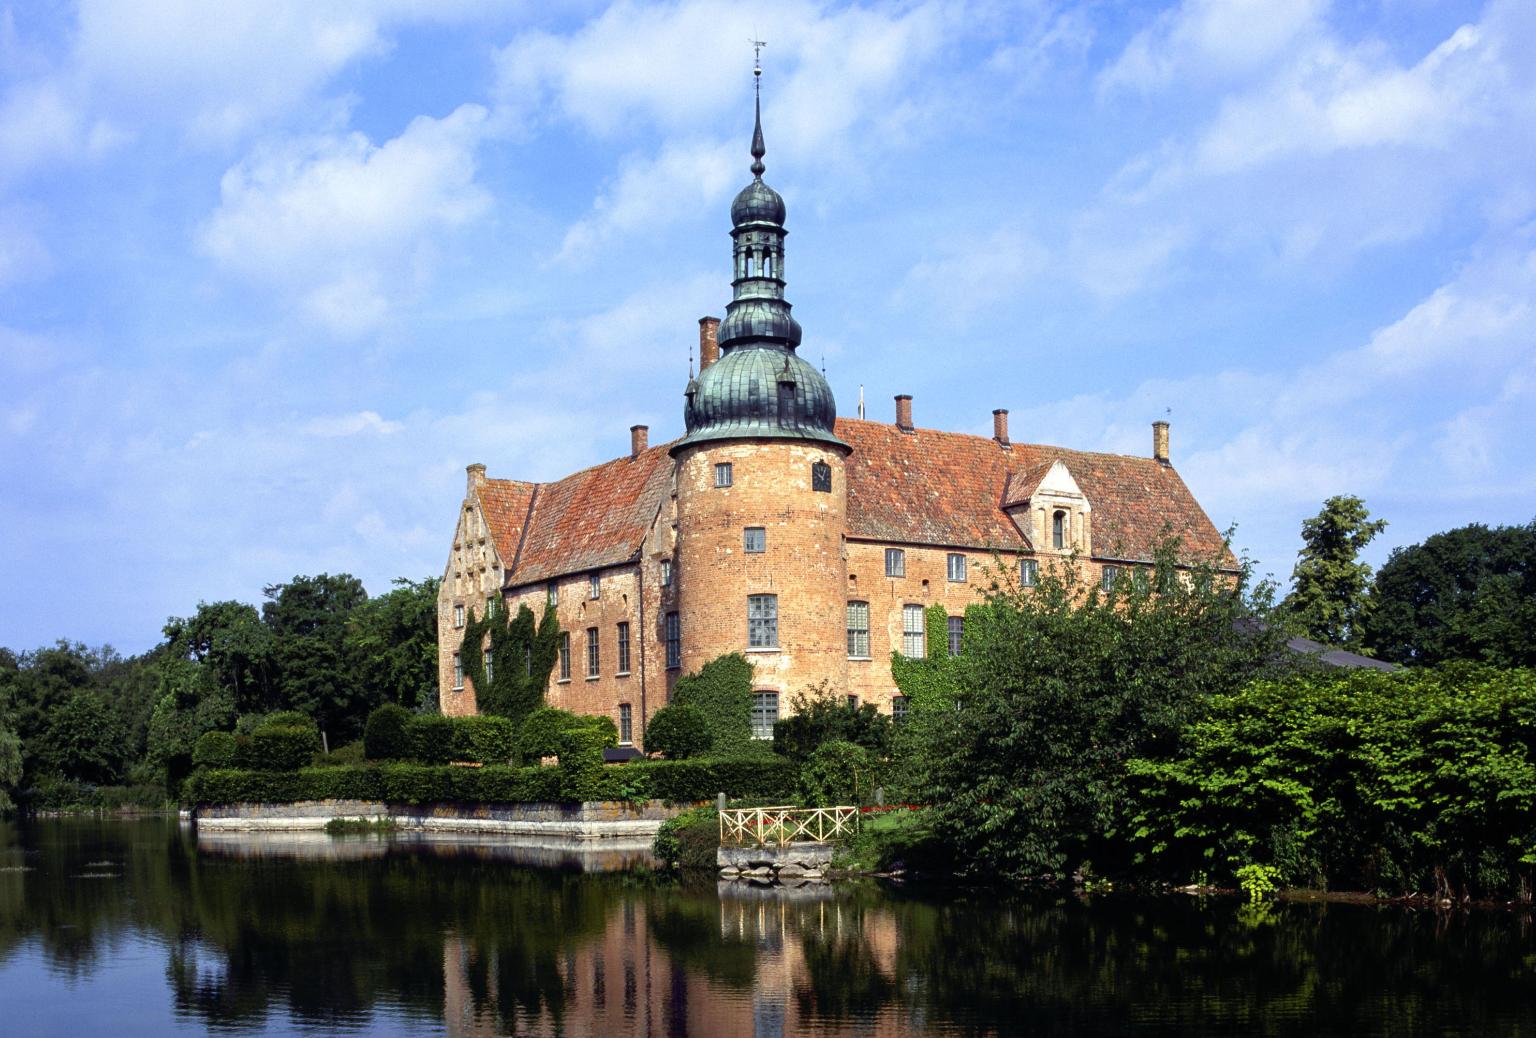 Das Schloss Örenäs im Sommer, umgeben von Natur und einem Wassergraben.